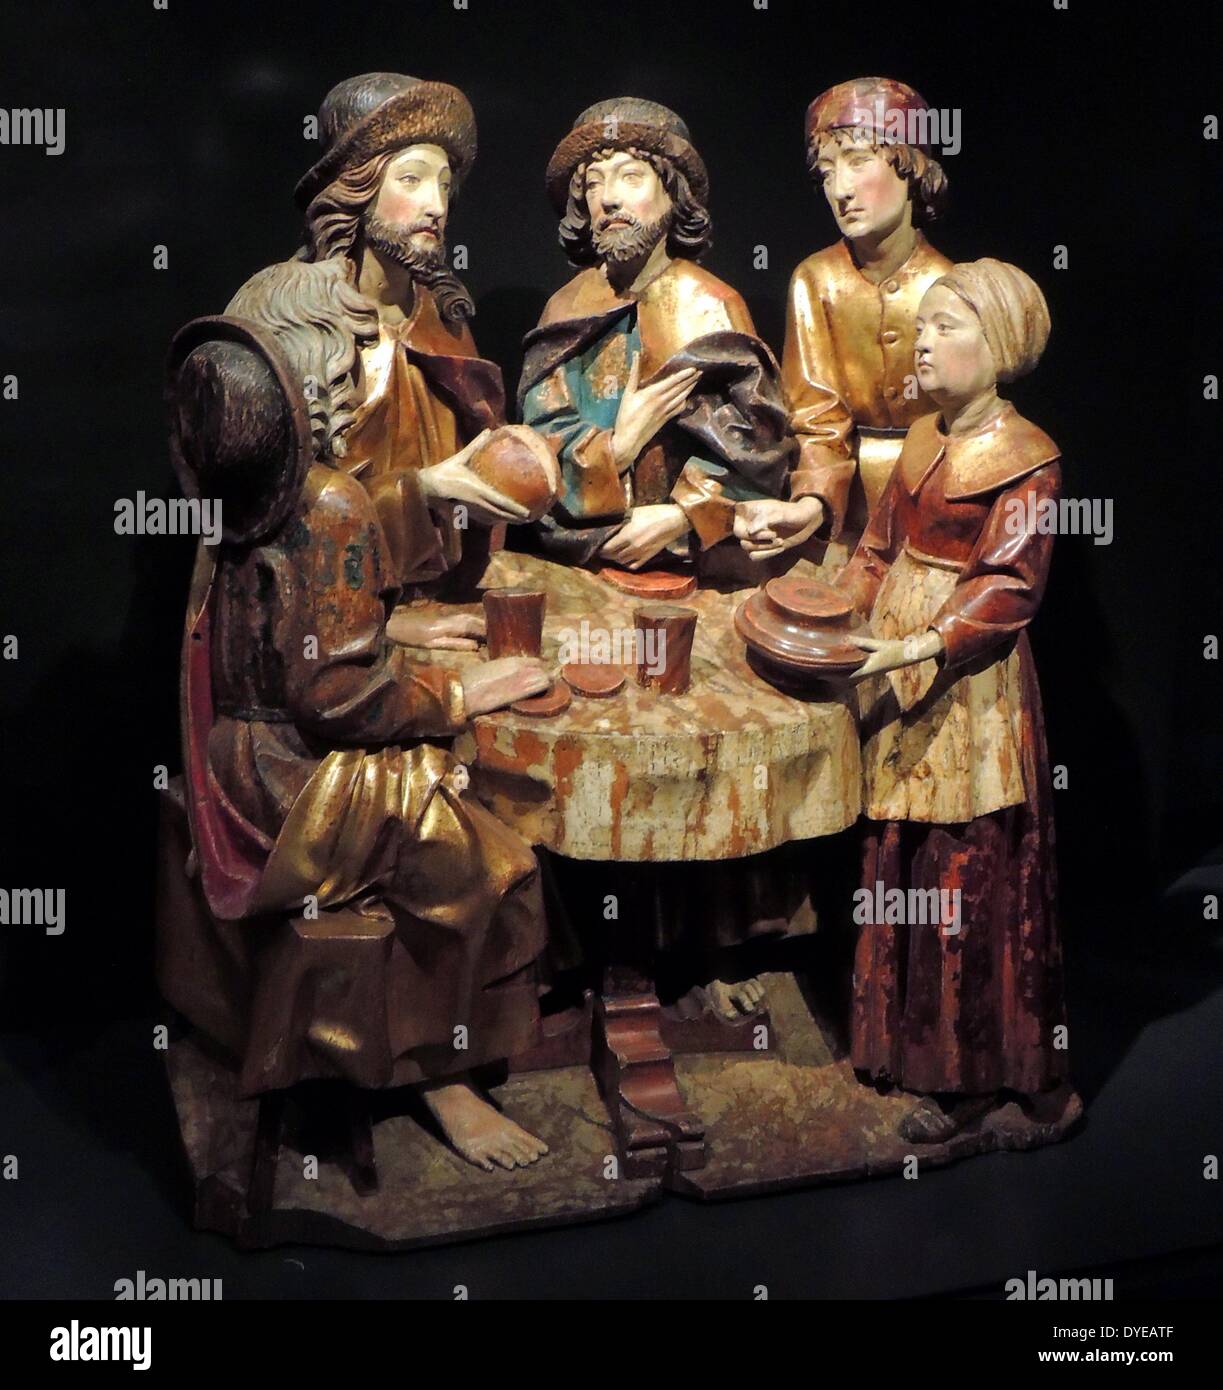 Le Christ dans la maison de Marie et Marthe. La dernière Cène. La Cène à Emmaüs. Ulm, c.1520. Avec de vieux bois polychromie. Ces trois groupes représentent des scènes de la vie du Christ dans lequel il apparaît lors d'un repas table. Ils ont à l'origine faisait partie de la prédelle (zone inférieure) d'un grand autel sculpté. Les trois scènes de table se reporter à la célébration de la messe, quand le pain et le vin sont présentés à l'autel comme le corps et le sang du Christ. Banque D'Images